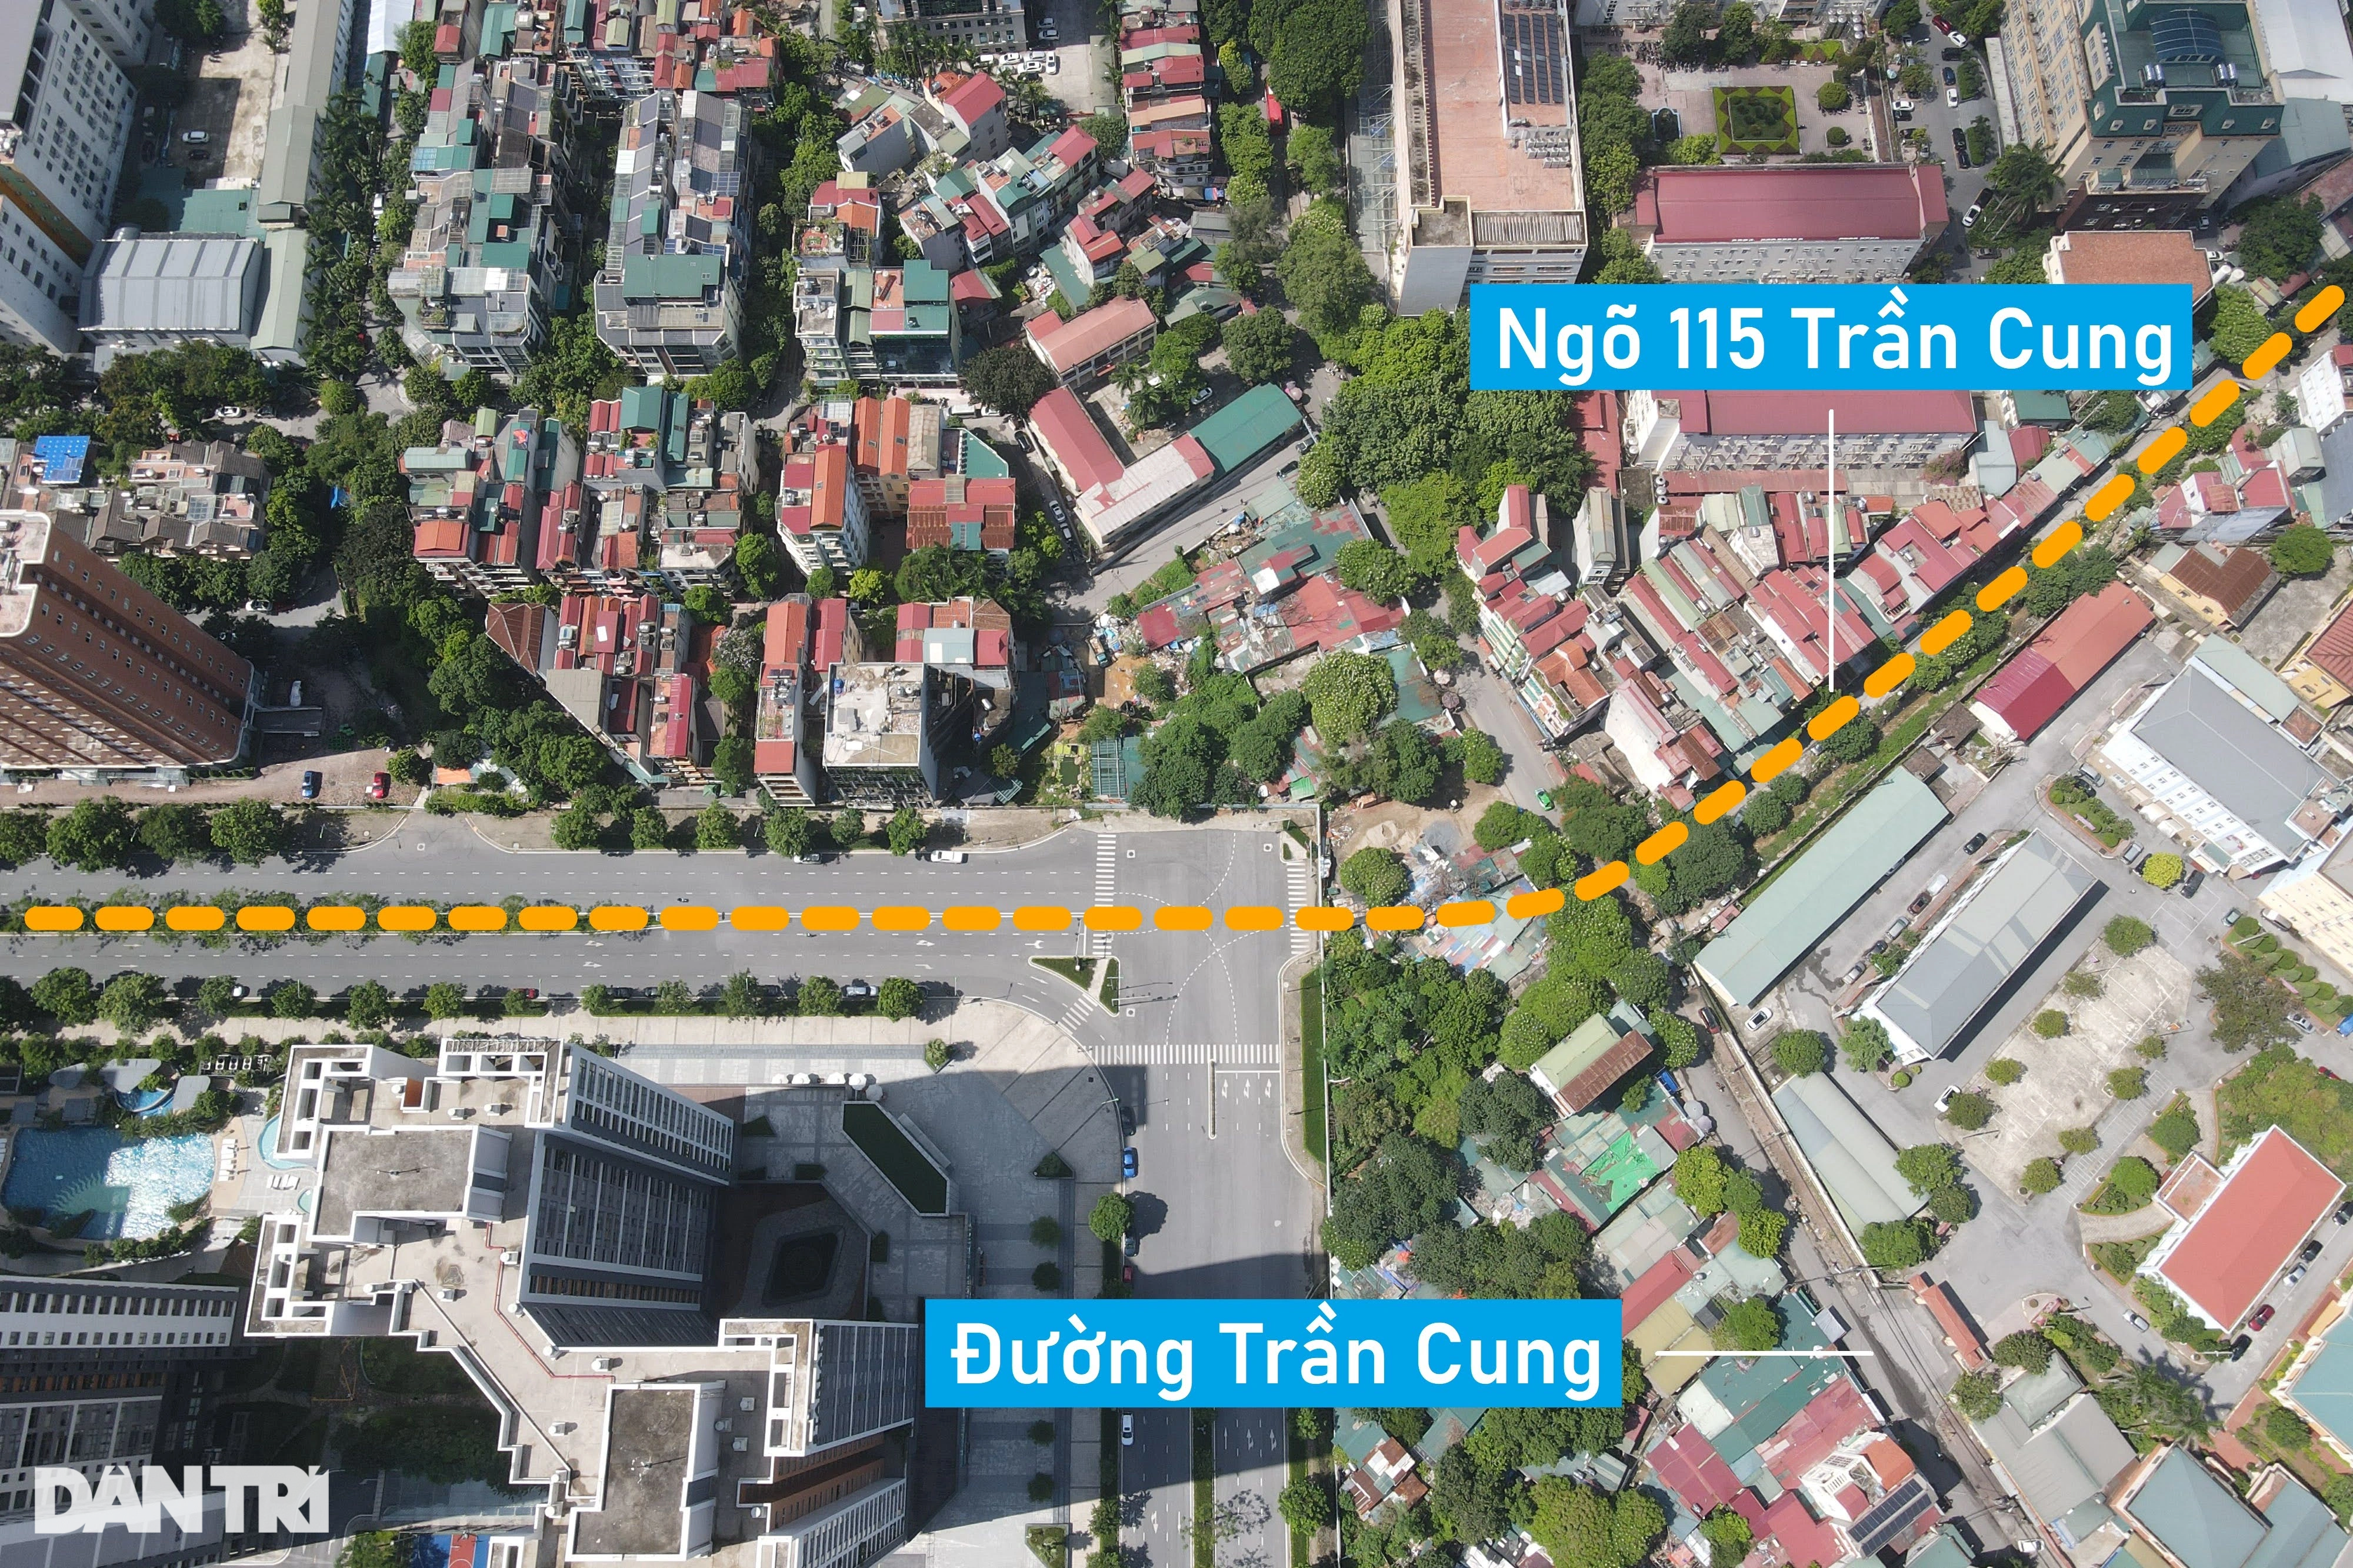 View - Loạt đường kết nối siêu dự án Tây Hồ Tây của Hà Nội | Báo Dân trí